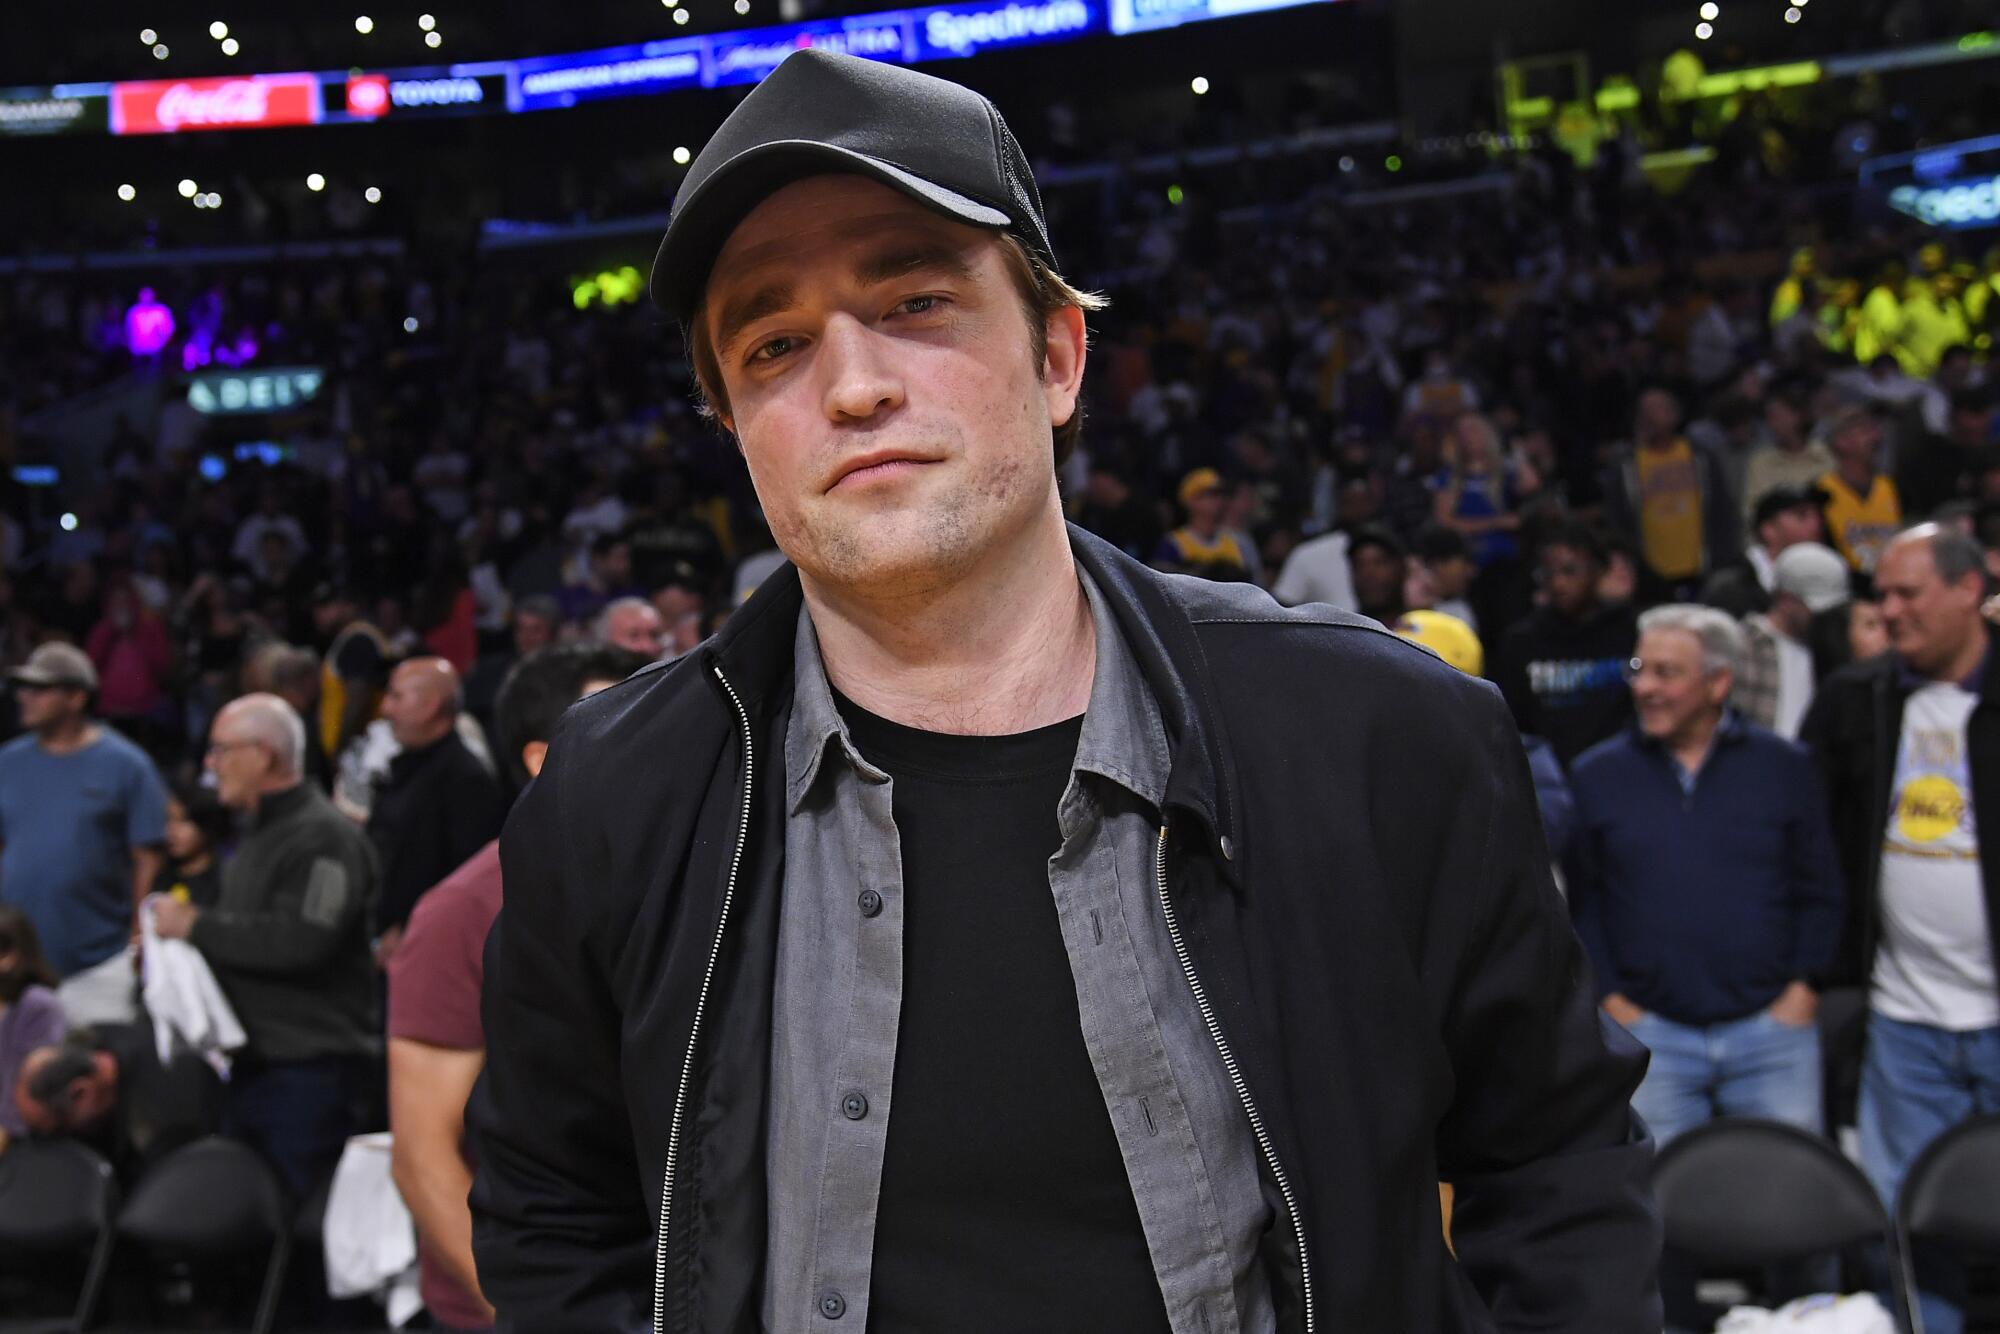 Robert Pattinson in a ballcap